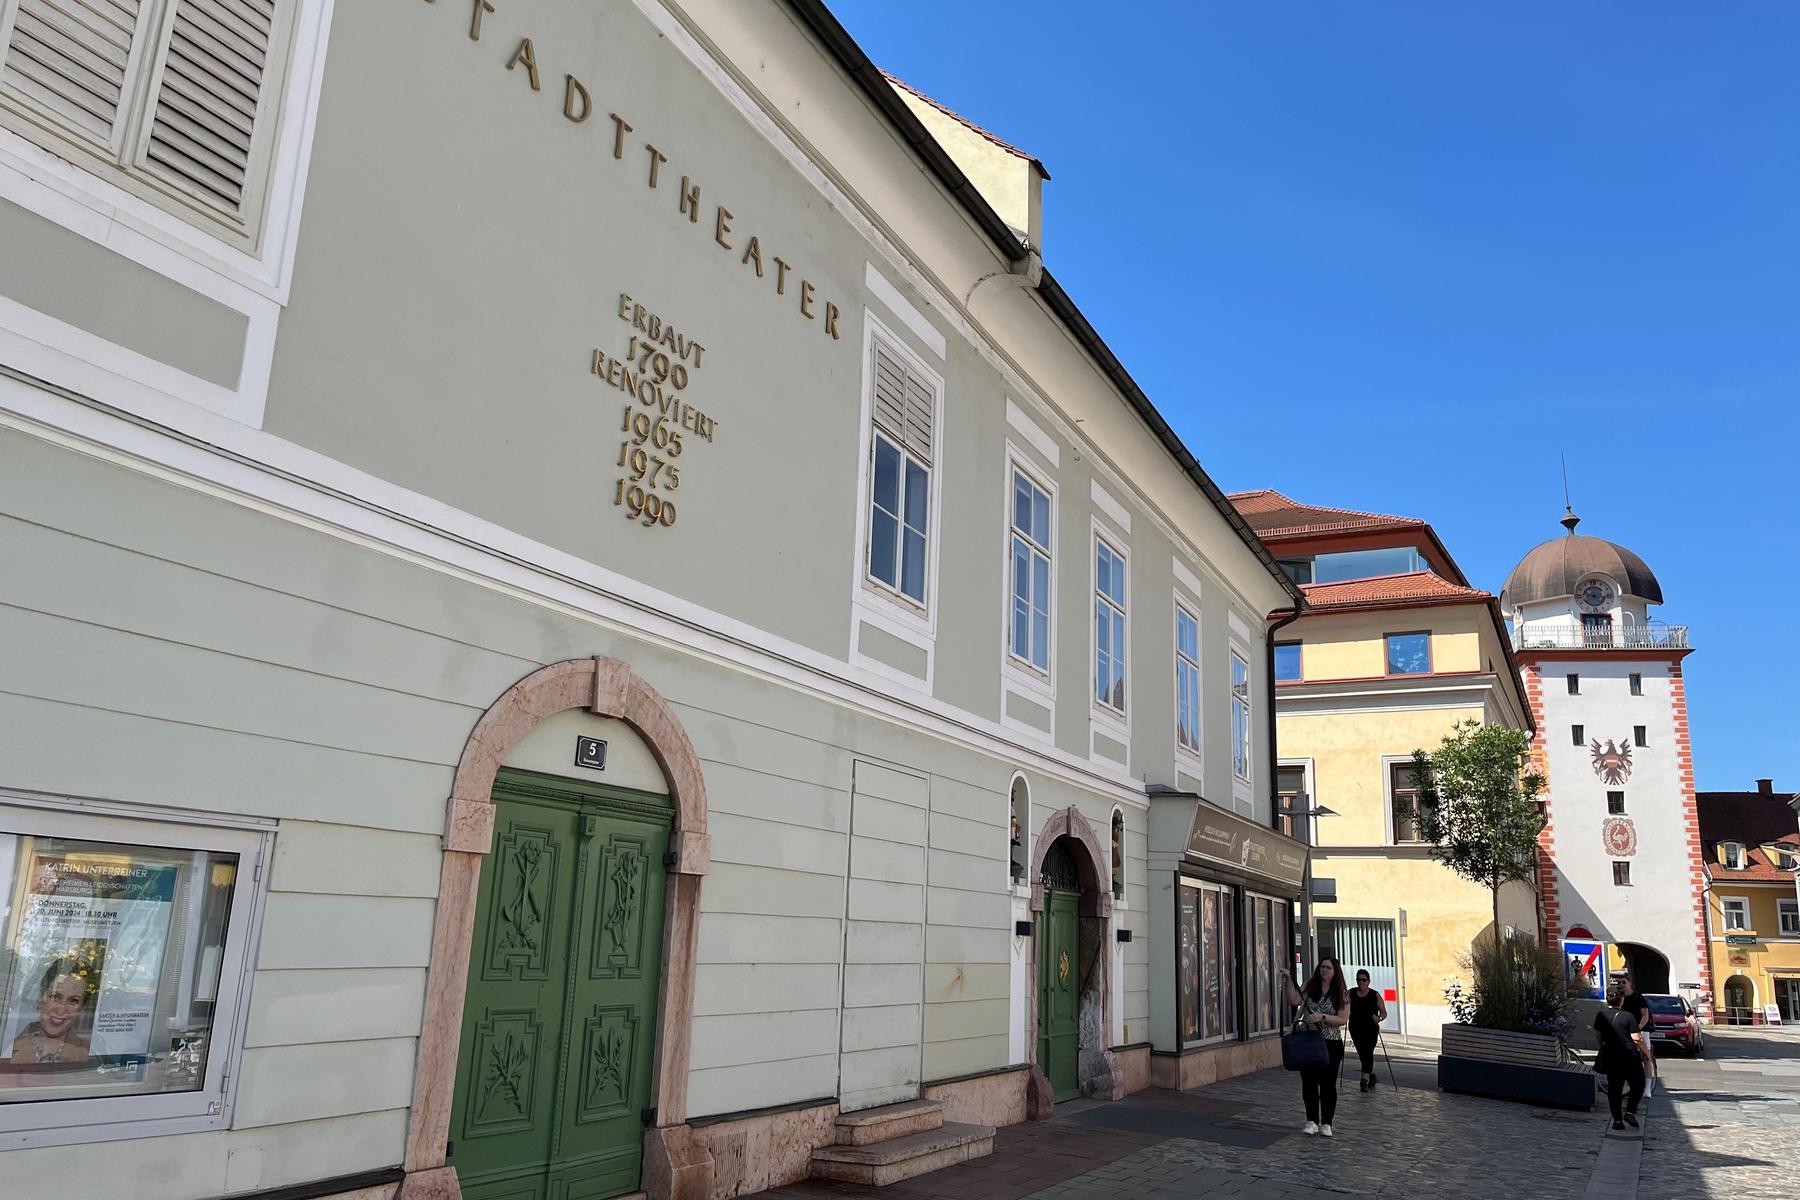 Leoben, nicht Grein: Wohl doch ältestes bürgerliches Stadttheater Österreichs